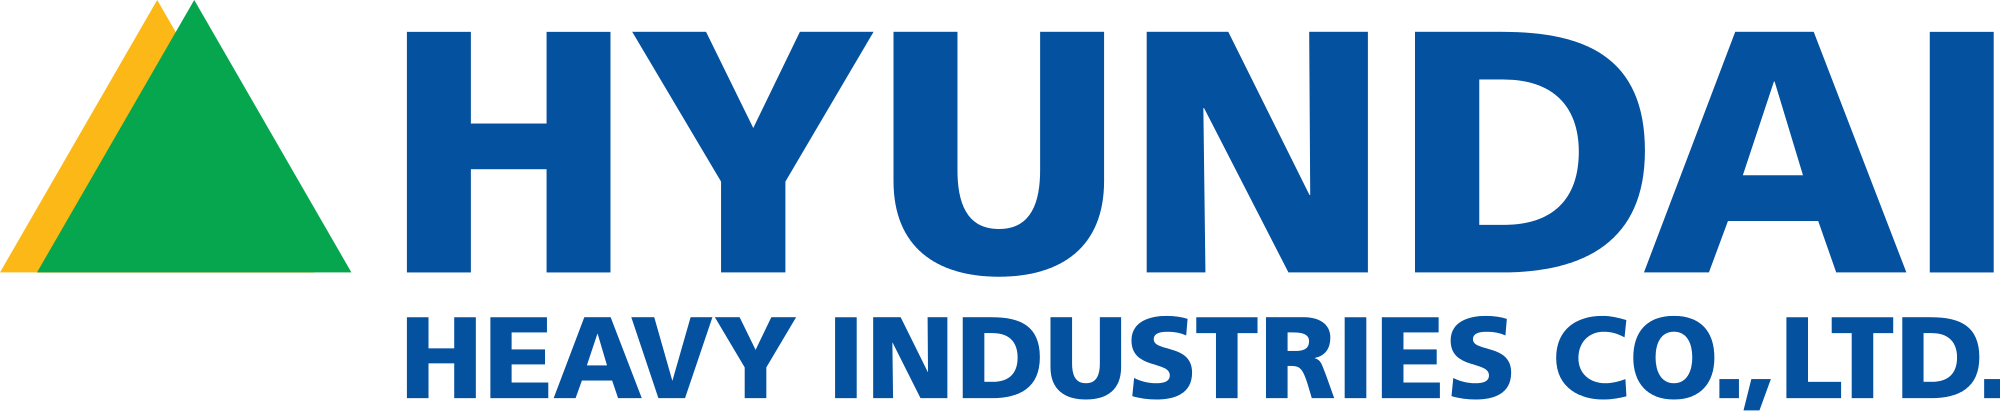 Hyundai Industries